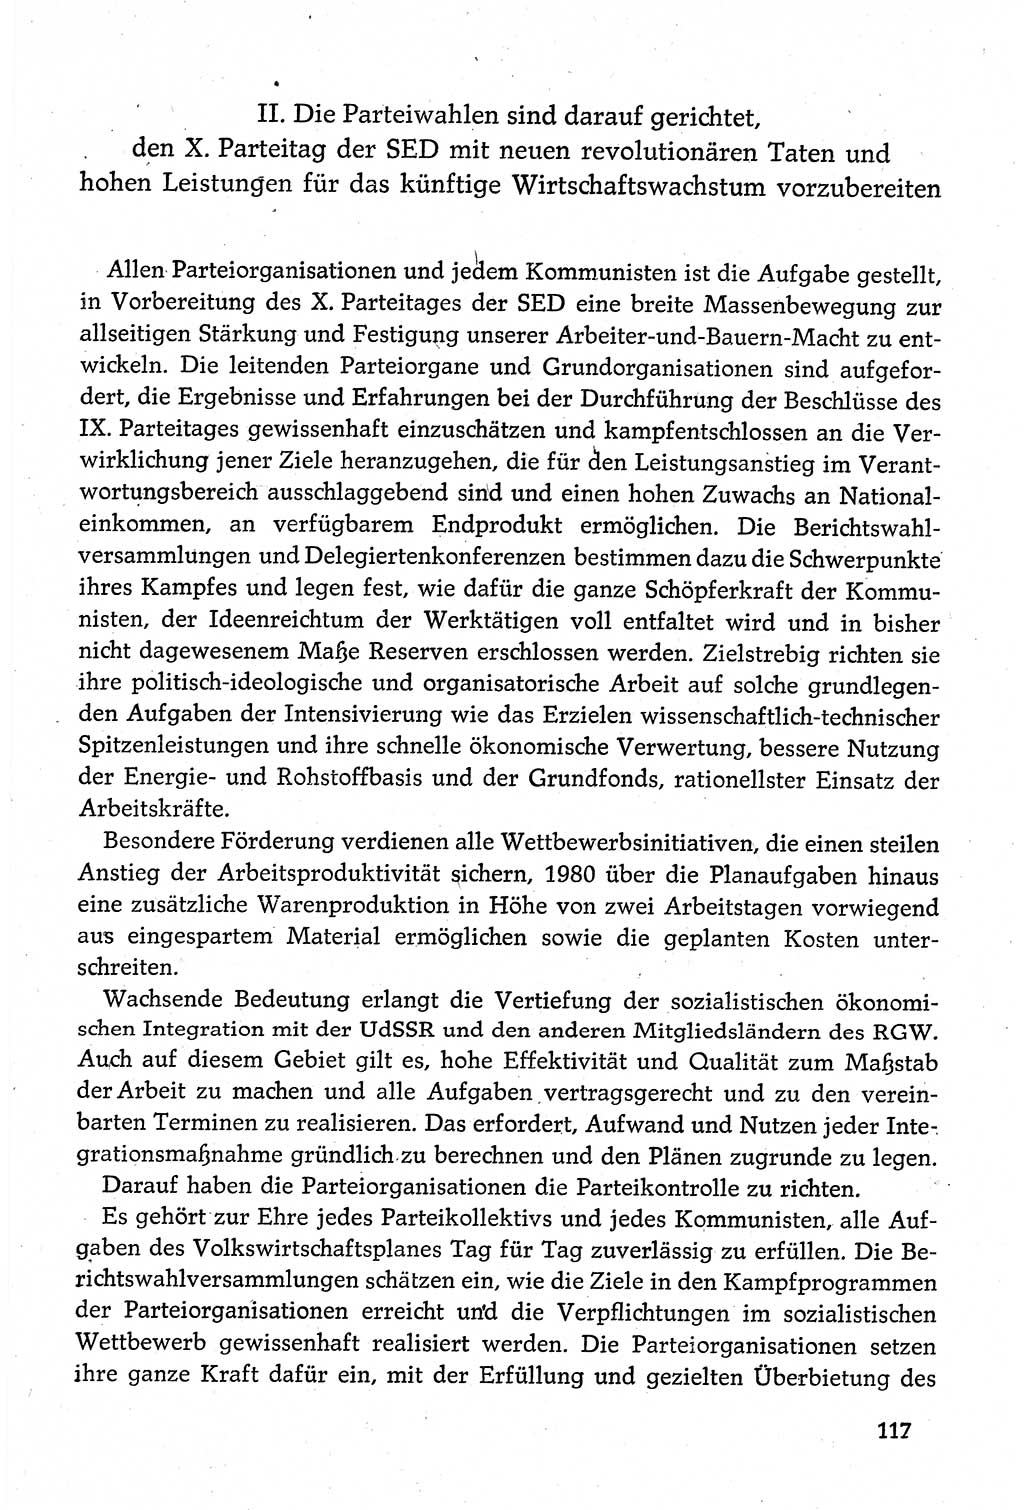 Dokumente der Sozialistischen Einheitspartei Deutschlands (SED) [Deutsche Demokratische Republik (DDR)] 1980-1981, Seite 117 (Dok. SED DDR 1980-1981, S. 117)